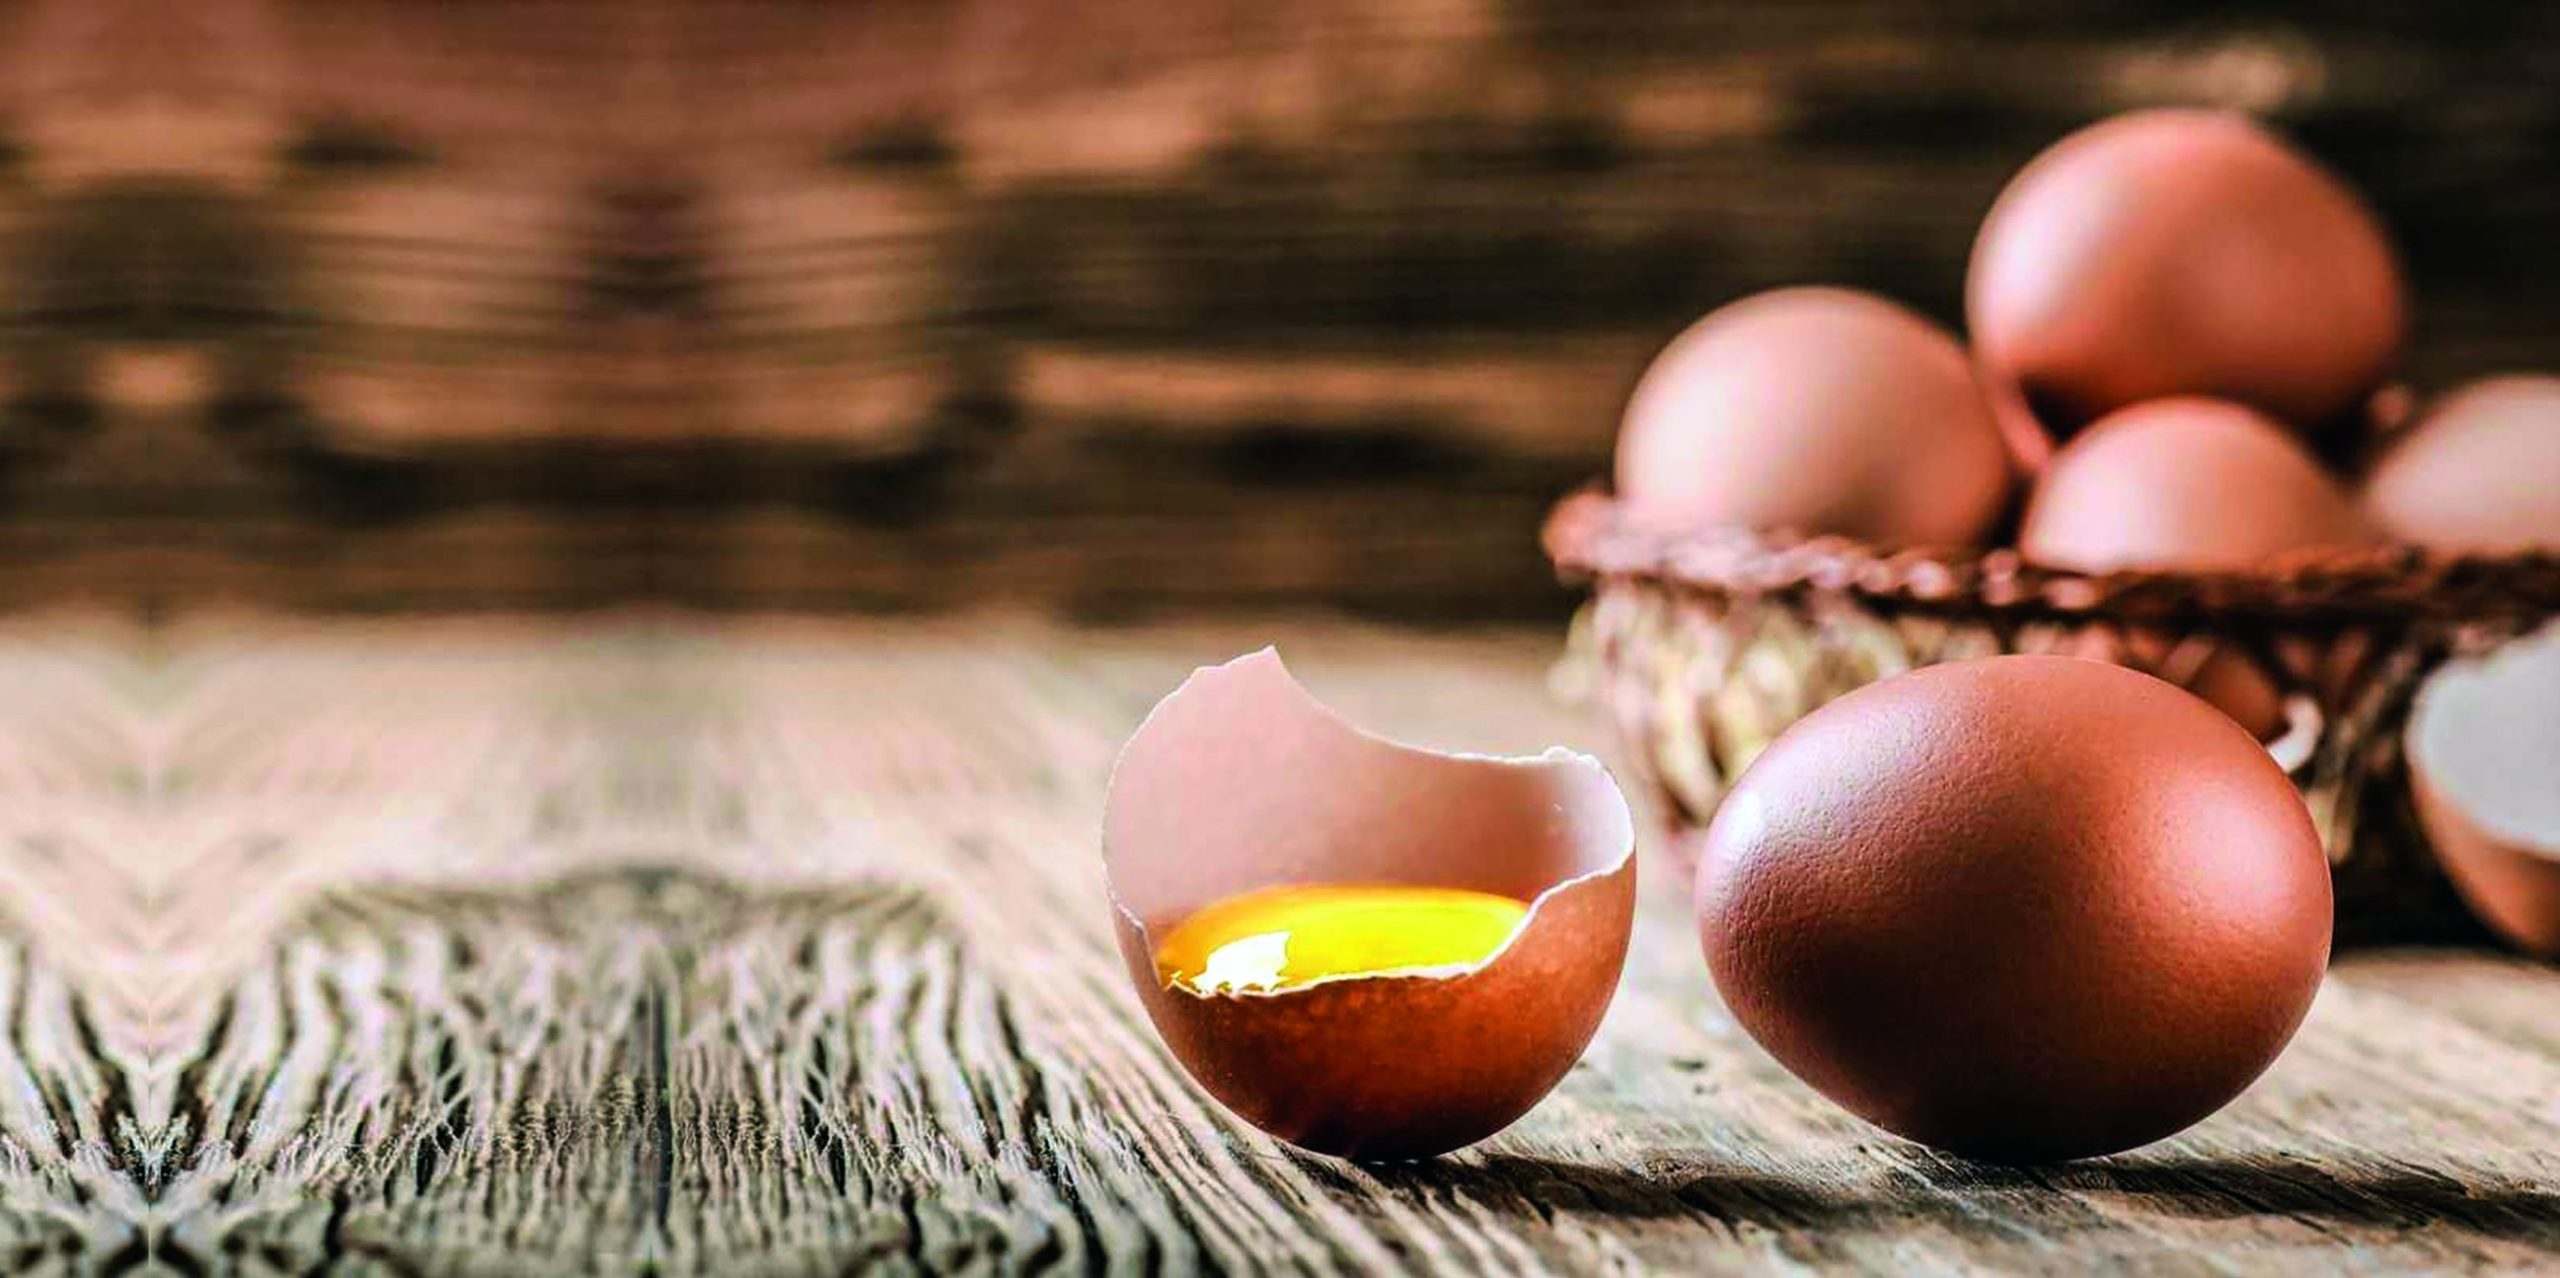 boja ljuske jaja kokošja jaja zablude o kokošjim jajima